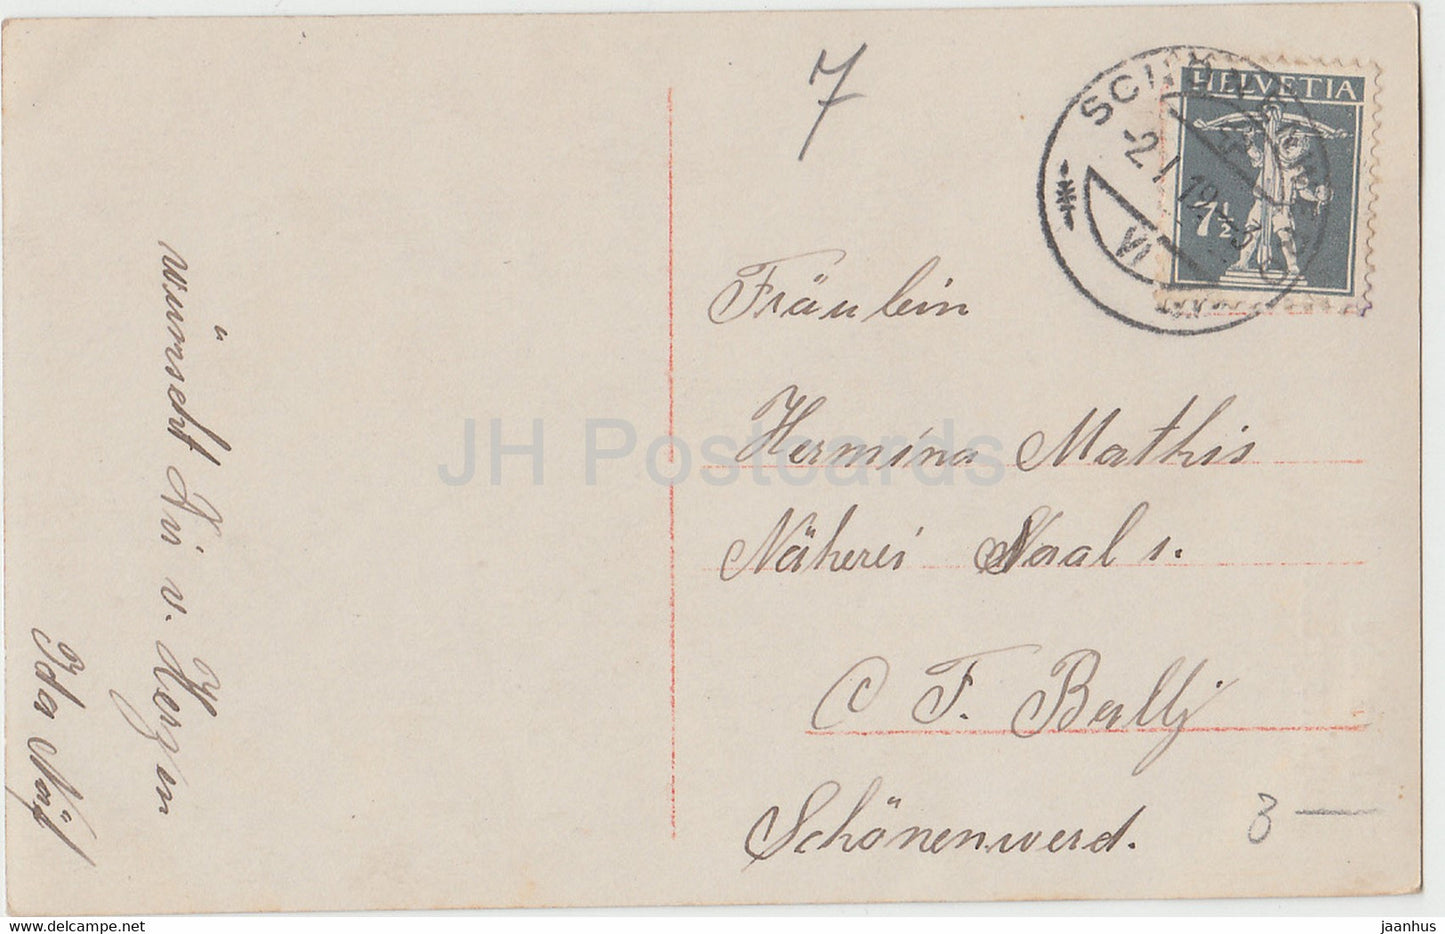 Carte de vœux du Nouvel An - Herzliche Neujahrsgrusse - horloge - femme - 5660/1 - carte postale ancienne - 1919 - Allemagne - utilisé